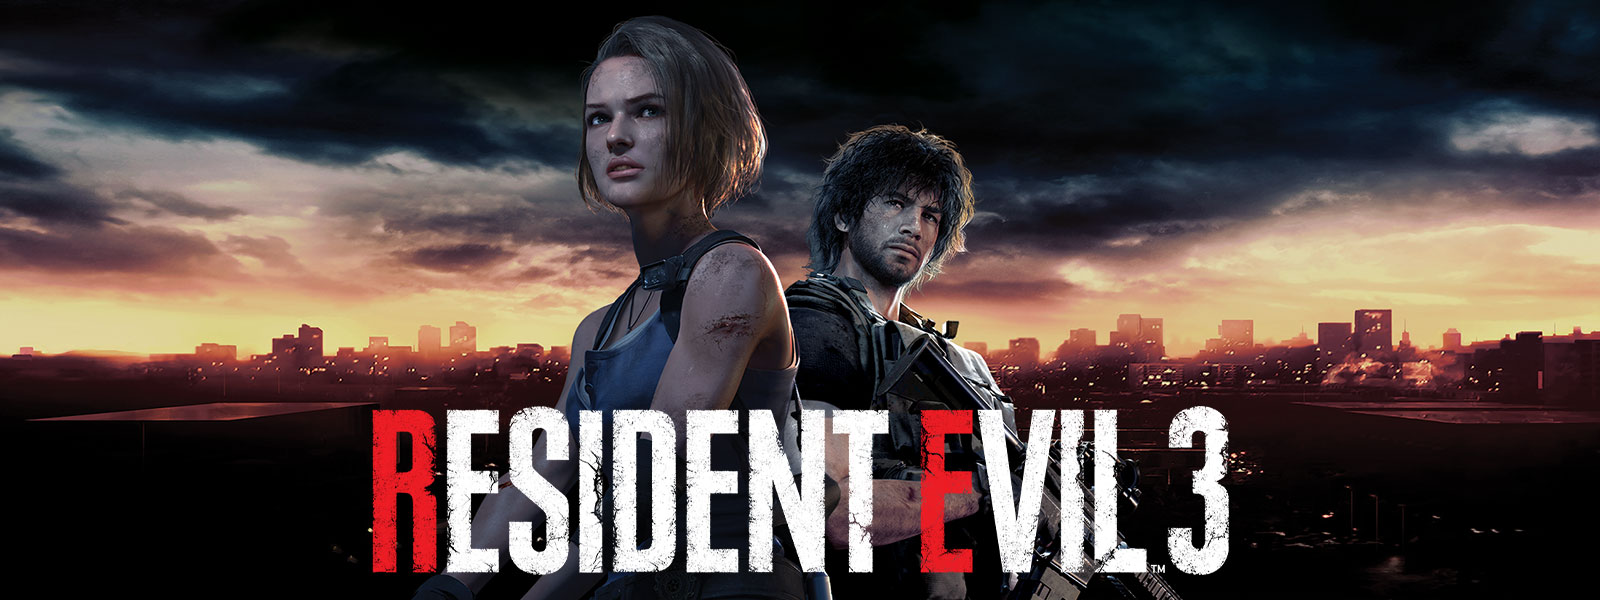 Resident Evil 3, Jill Valentine en Carlos Oliveira staan voor de skyline van Raccoon City